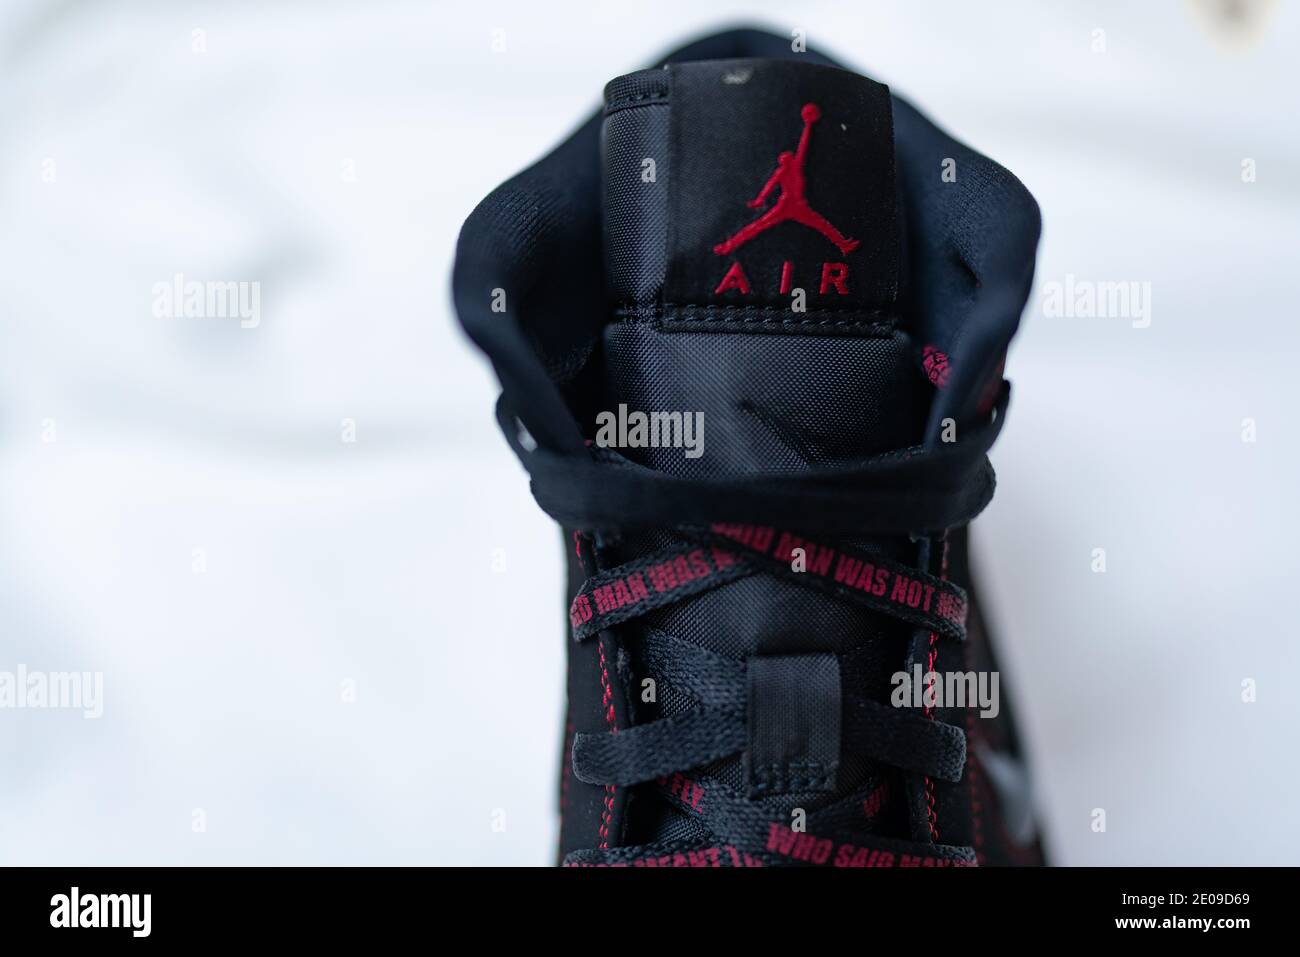 Nike Jordan 1 rossa, nera e bianca | 23 sneakers cultura basket, cuciture  rosse | Michael Jordan, Chicago Bulls Foto stock - Alamy